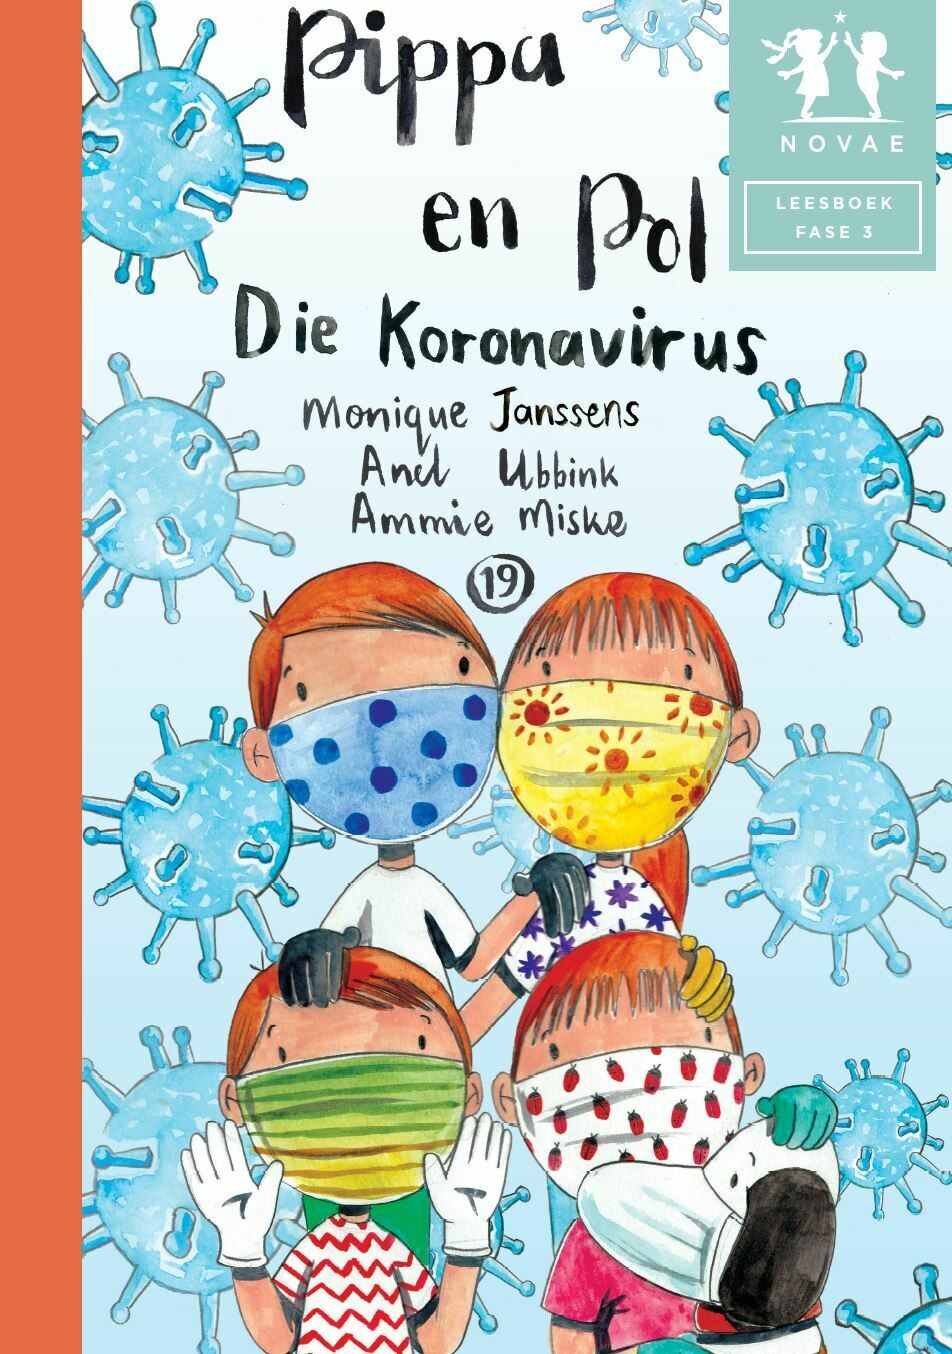 Pippa en Pol: Die Koronavirus - Leesboek